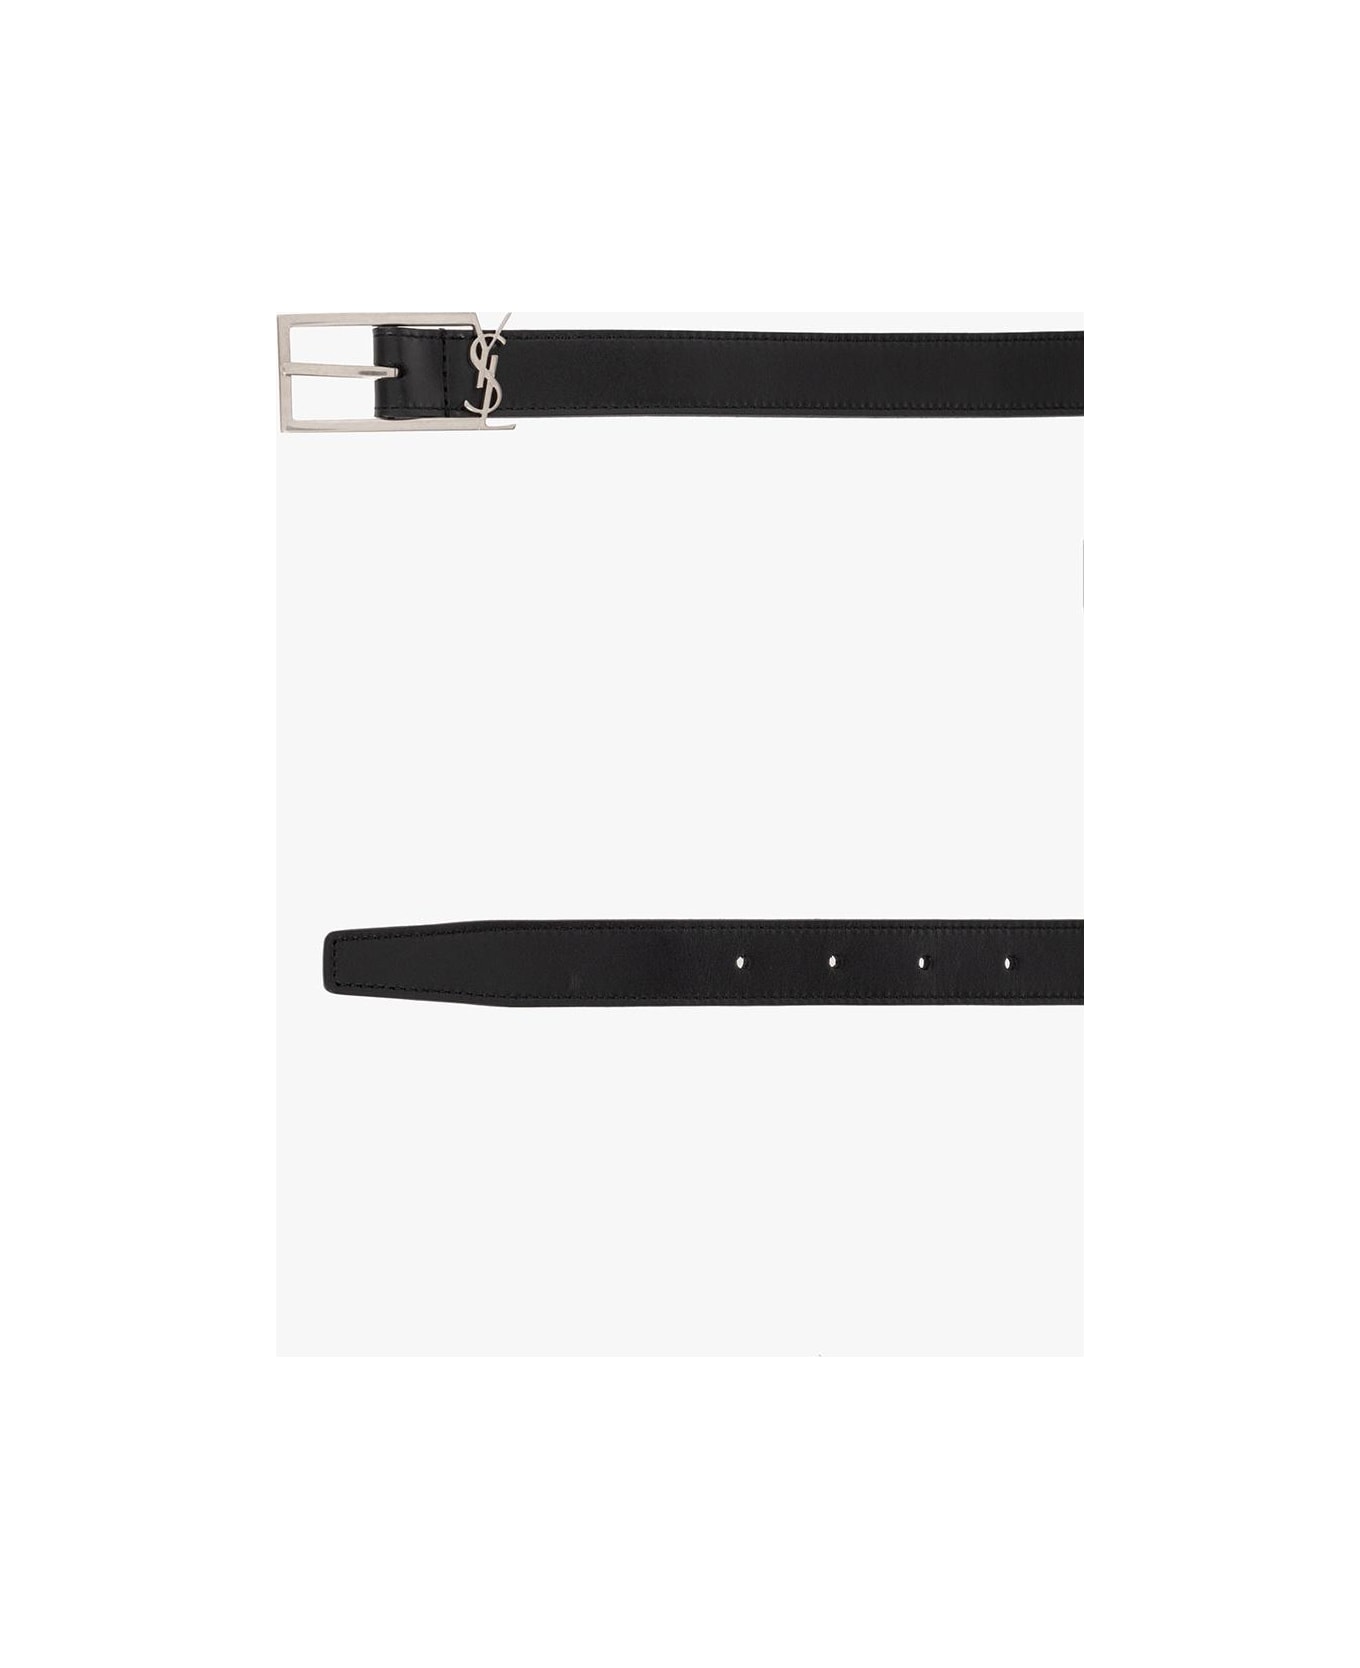 Saint Laurent Leather Belt With Logo - Black